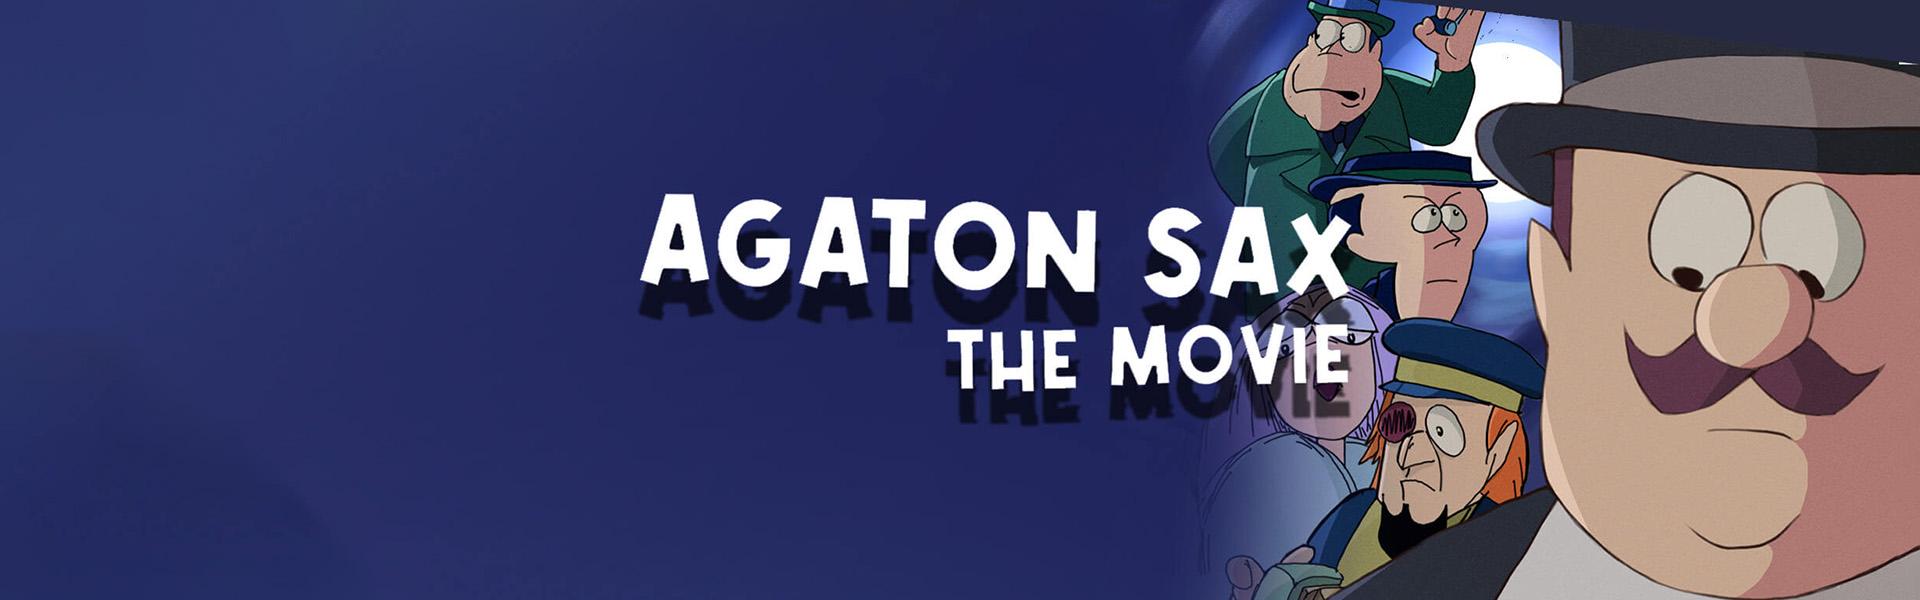 Agaton Sax the Movie